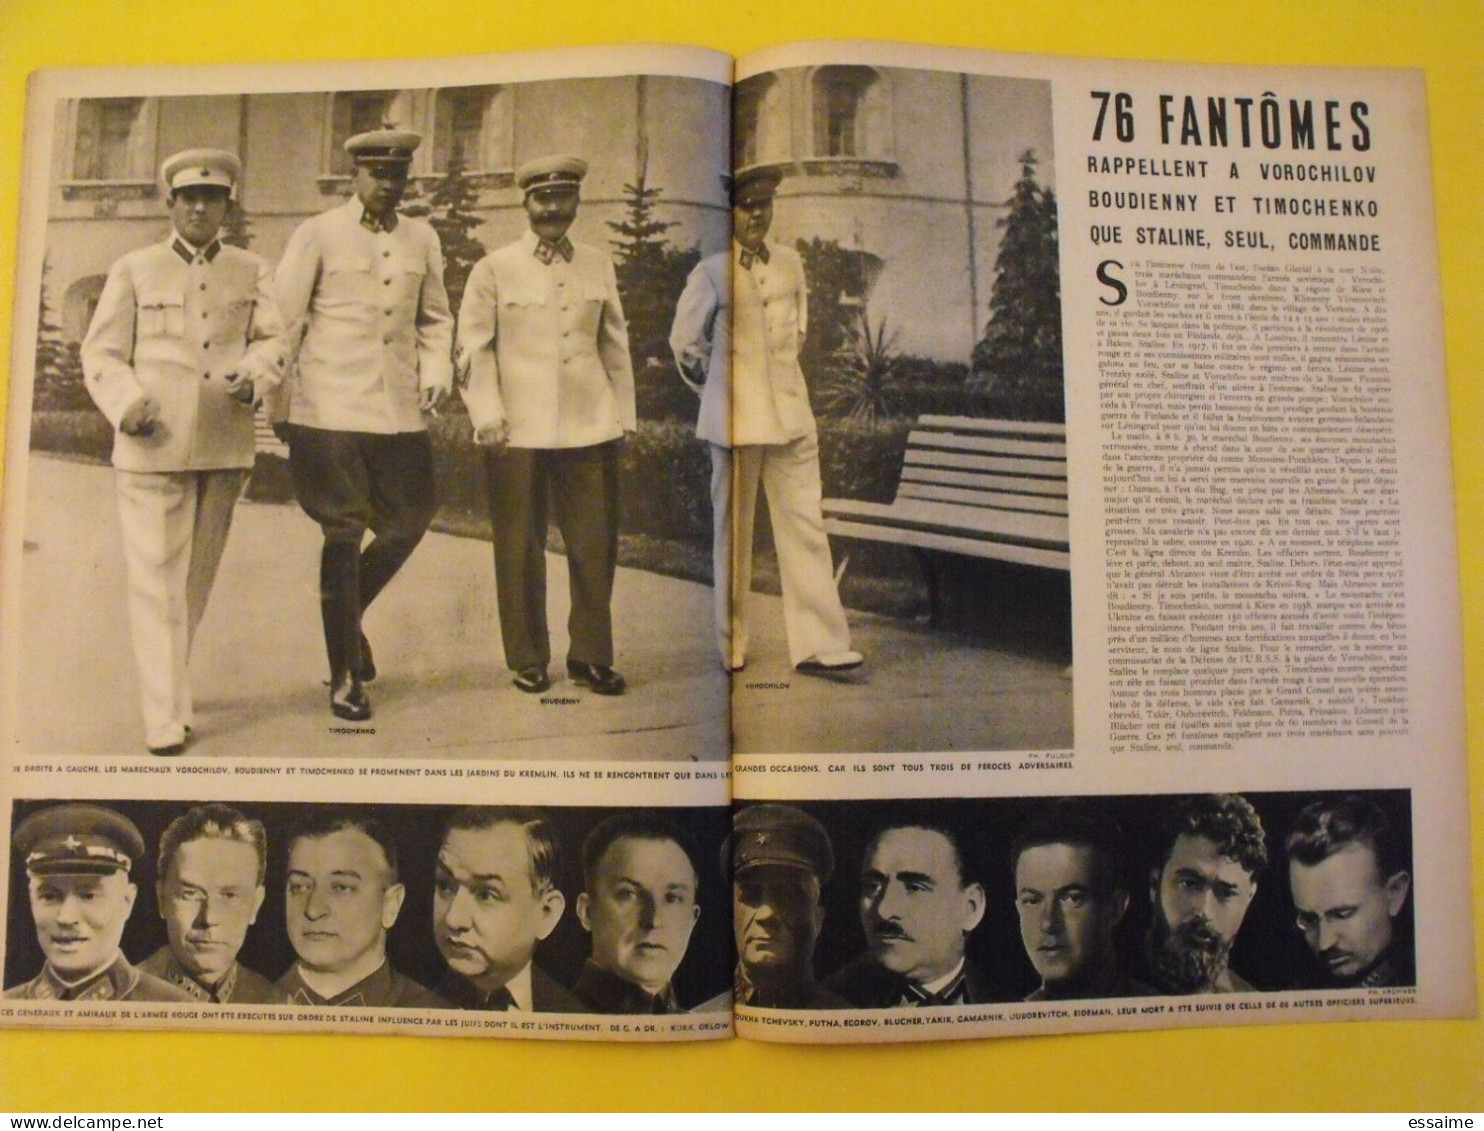 6 revues La semaine de 1941. actualités guerre. photos collaboration iran pagnol laval turquie tatoué giono ukraine